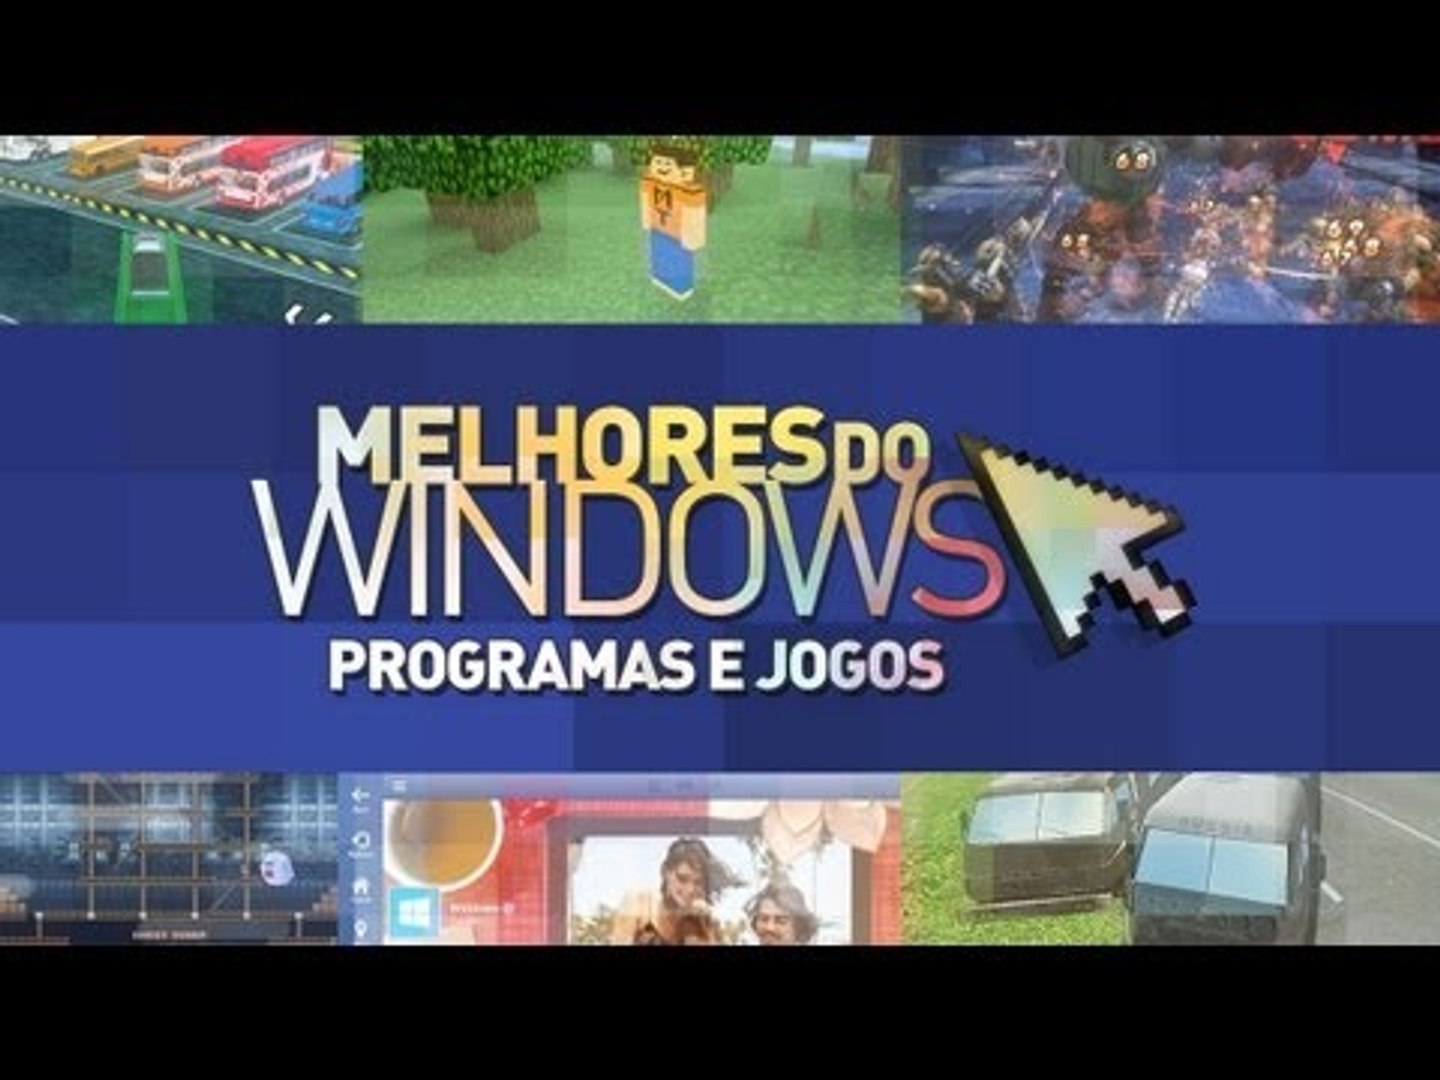 Melhores programas e jogos para Windows: 20/05/14 [vídeo] - TecMundo